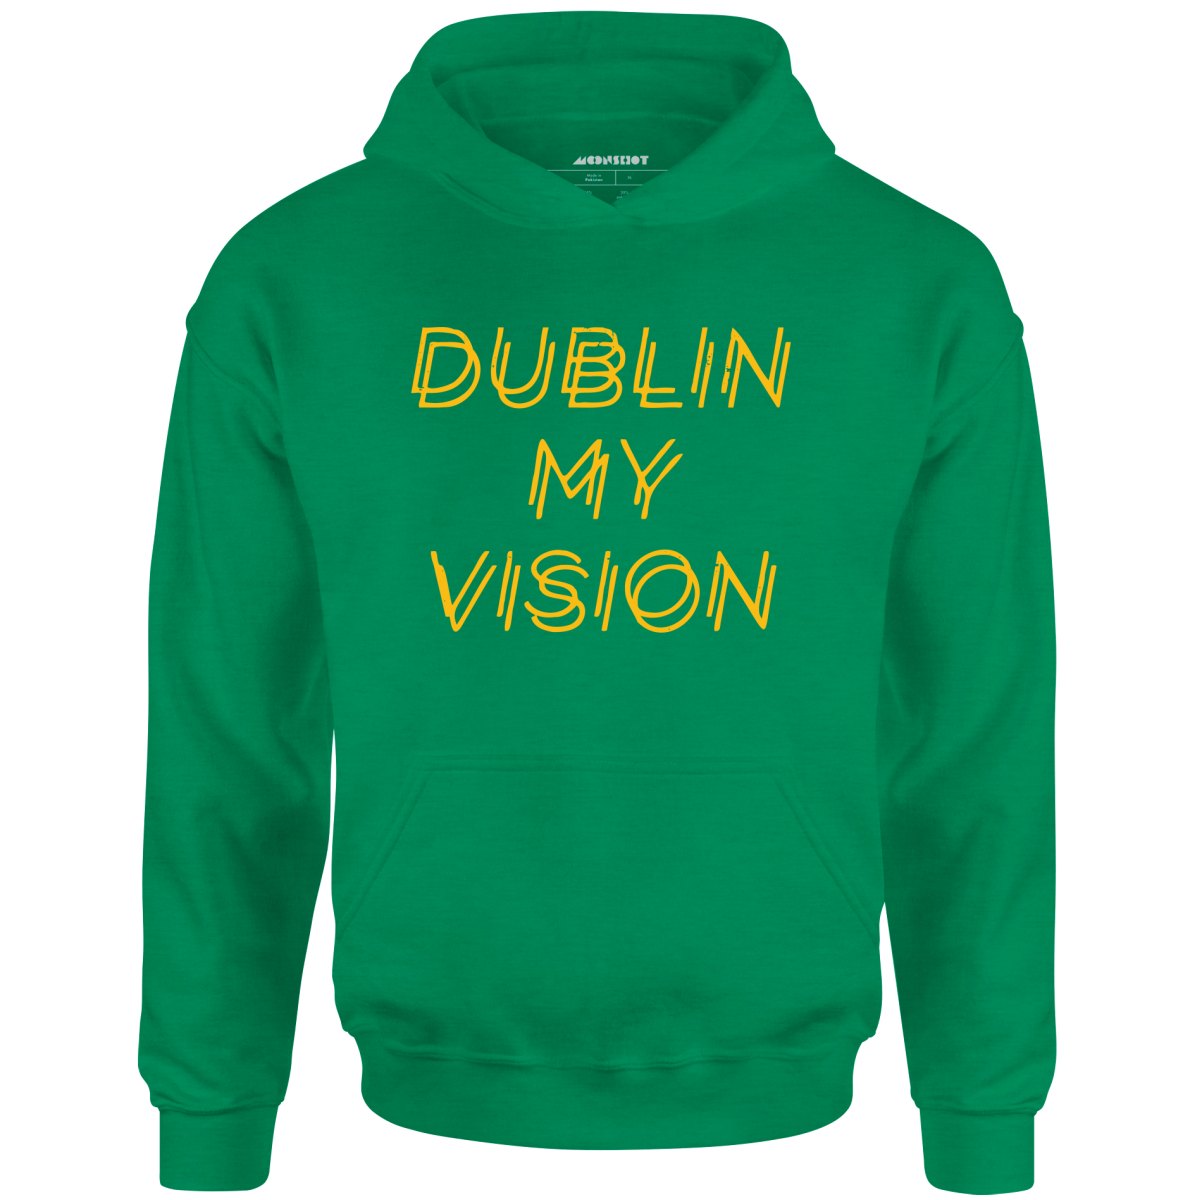 Dublin My Vision - Unisex Hoodie